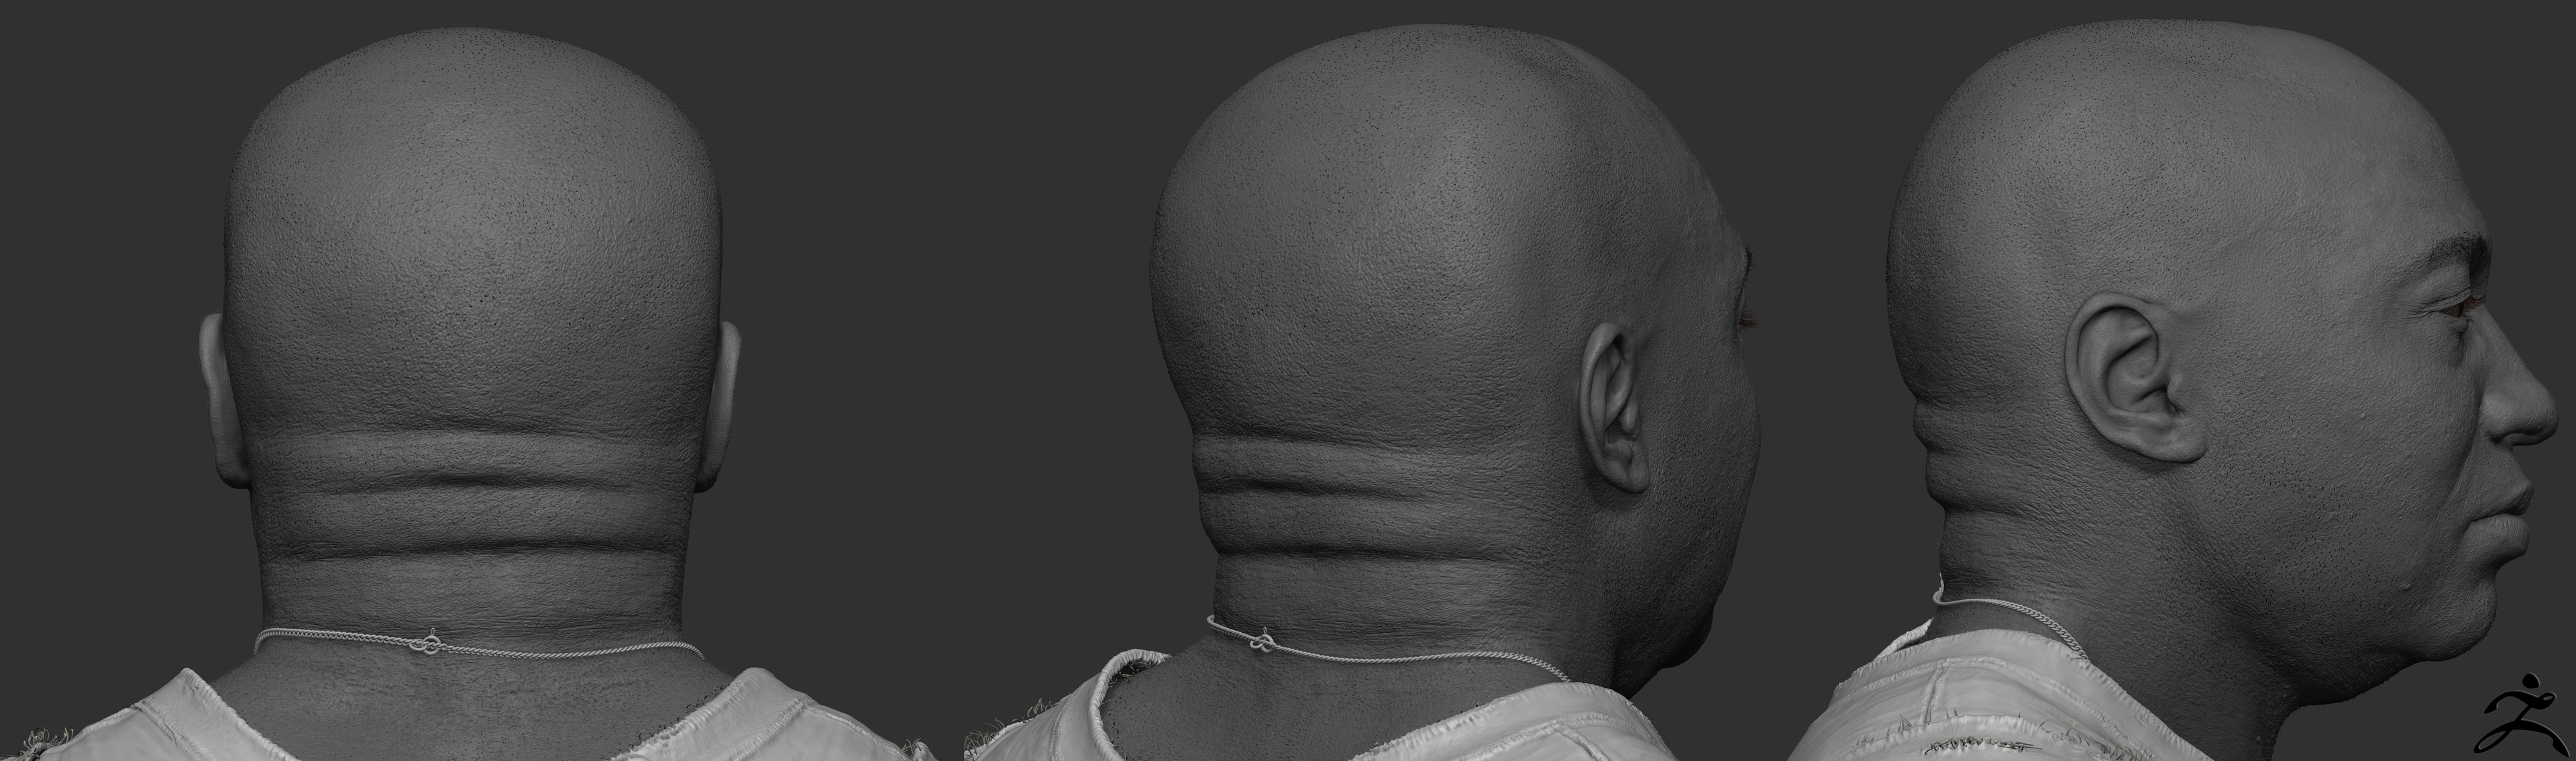 Zbrush Sculpt Head back: Quick Render